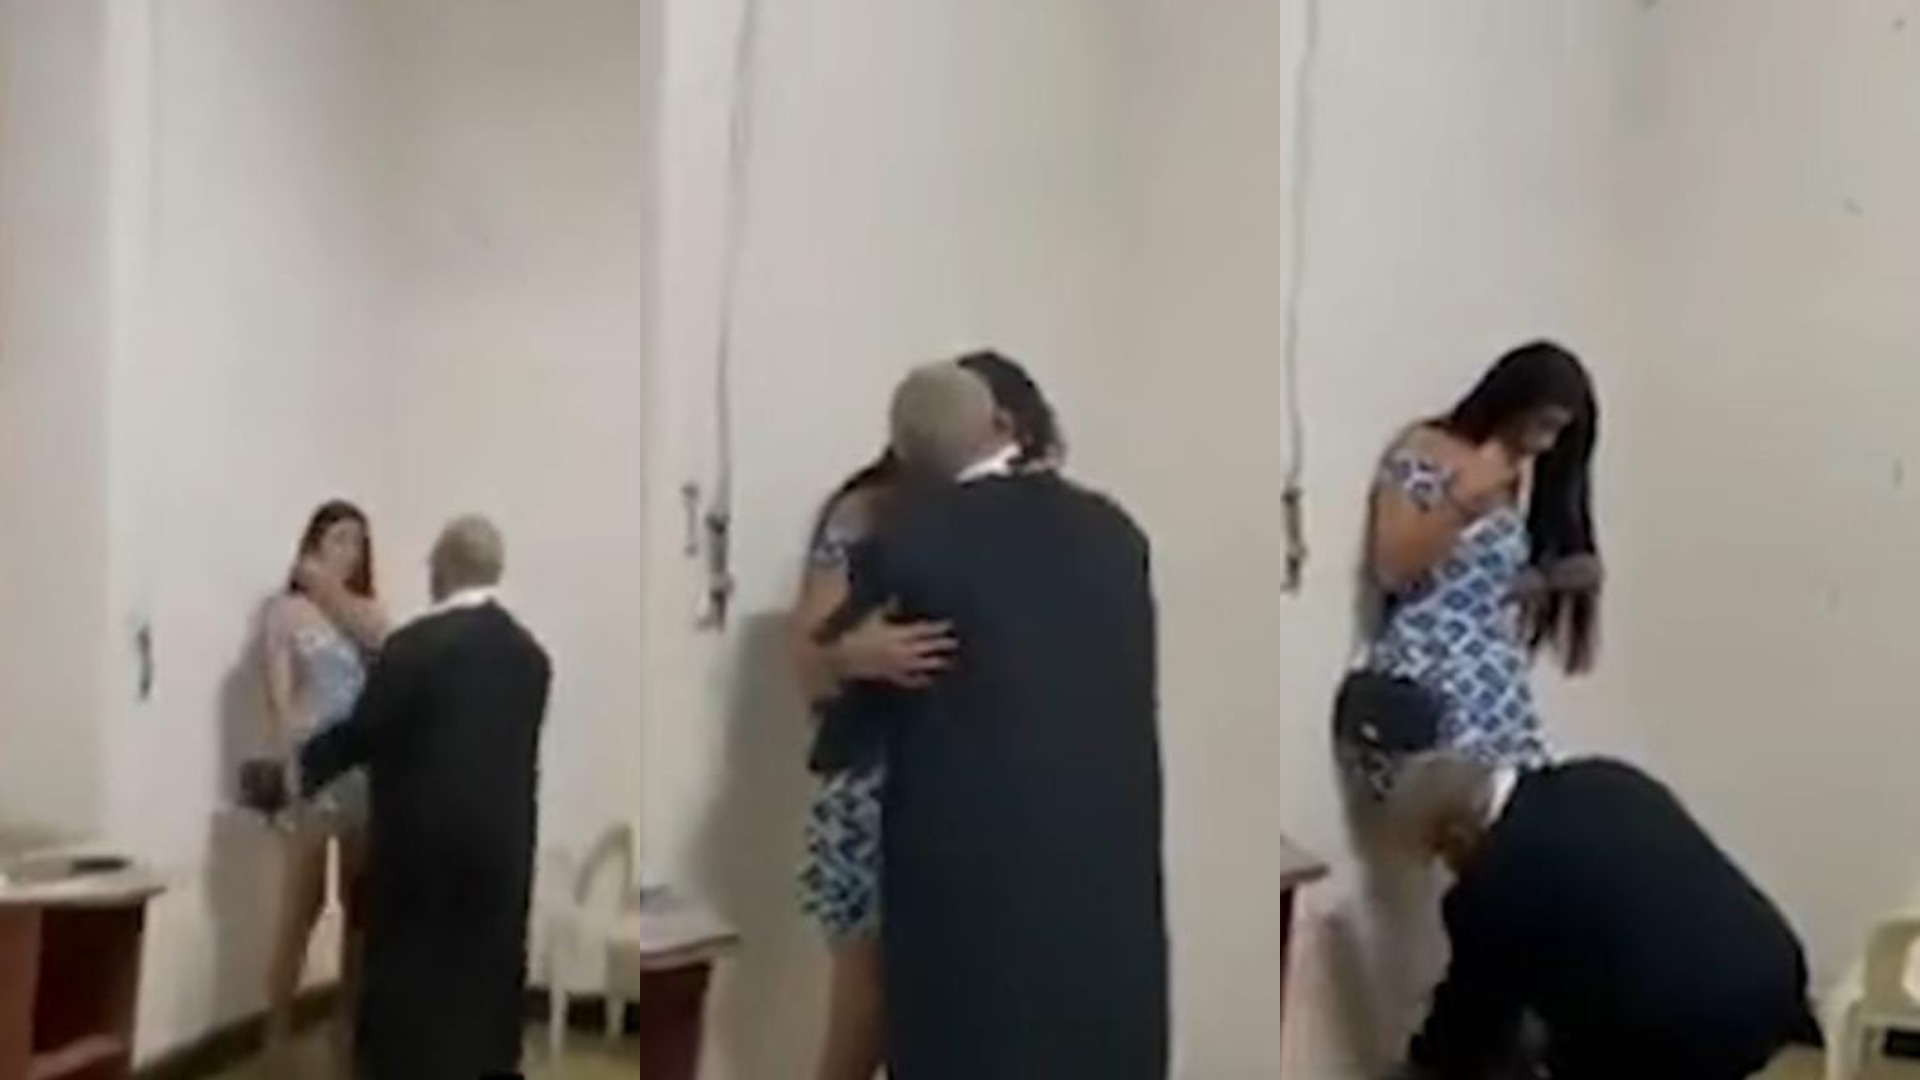 VIDEO | Con las manos en una ¿joven?, graban a sacerdote en una iglesia